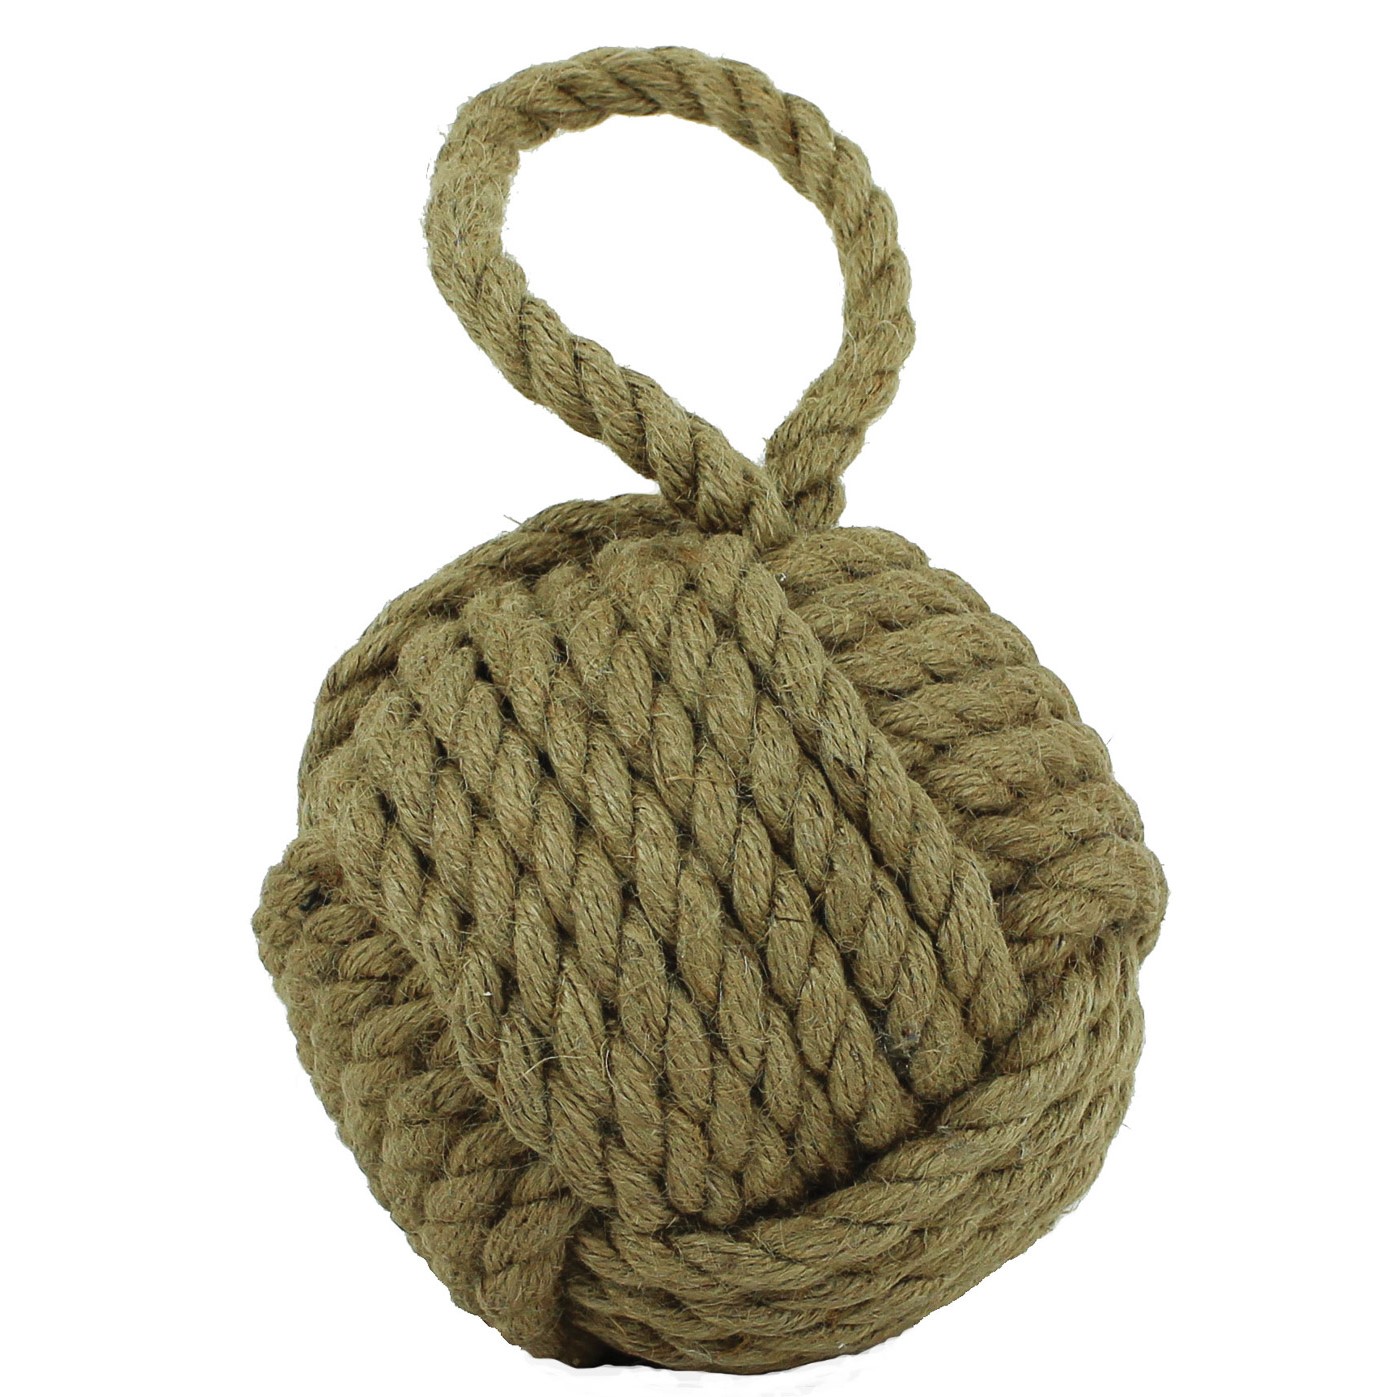 Sailor's Knot Monkey Fist Nautical Rope Door Stop